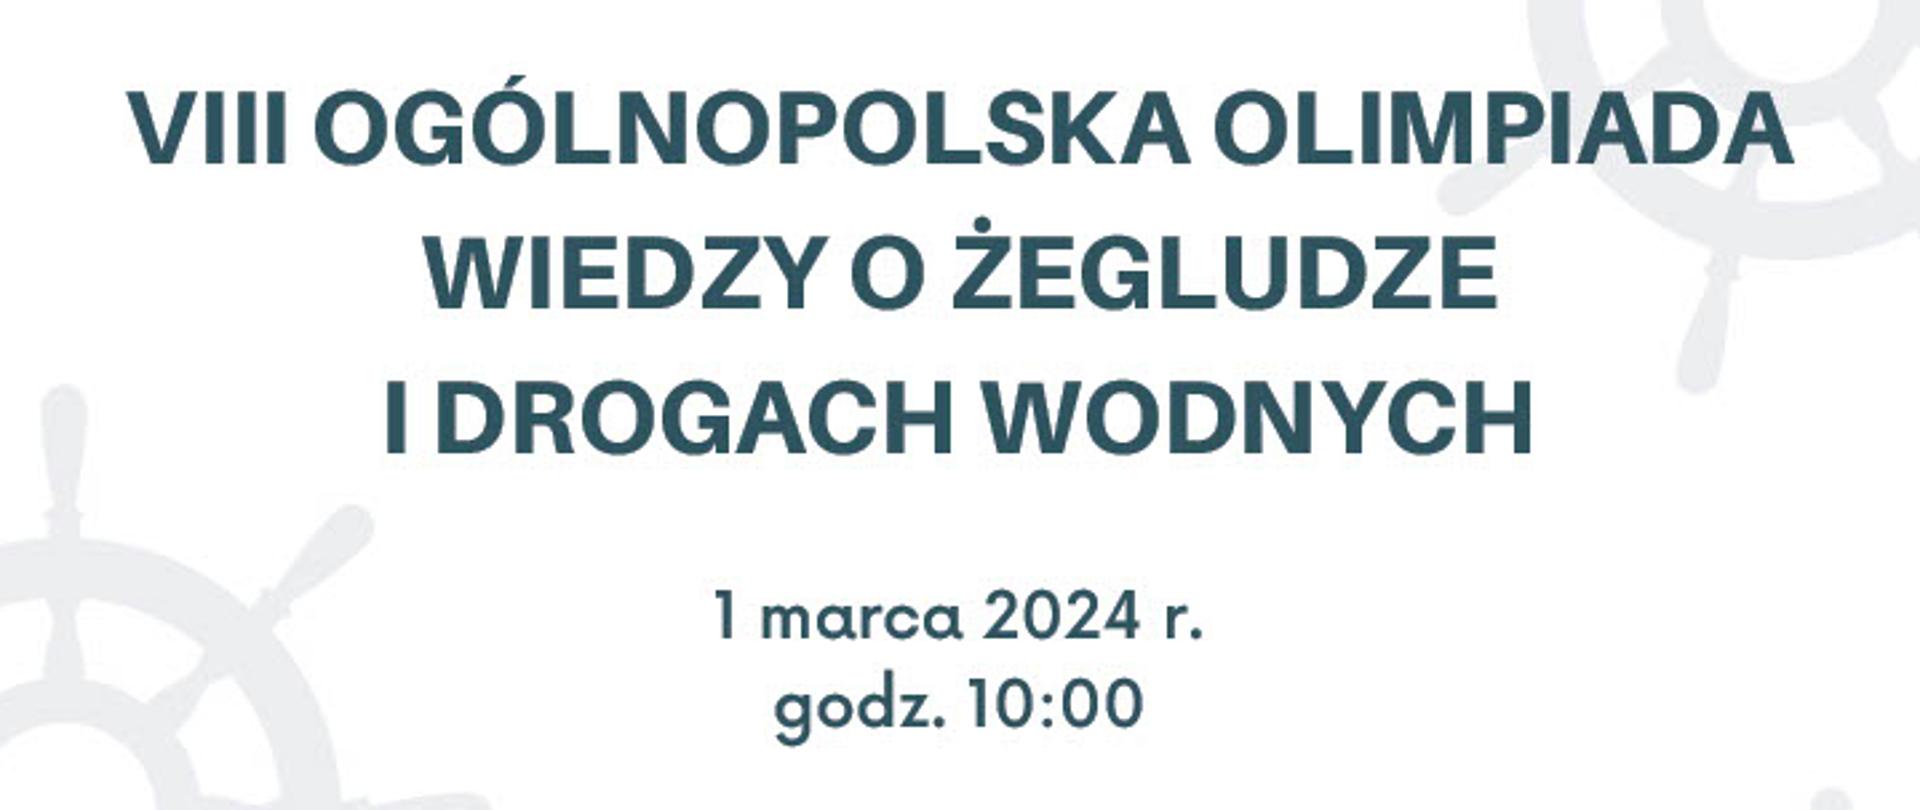 Plakat promujący VIII. Olimpiadę Wiedzy o Żegludze i Drogach Wodnych.